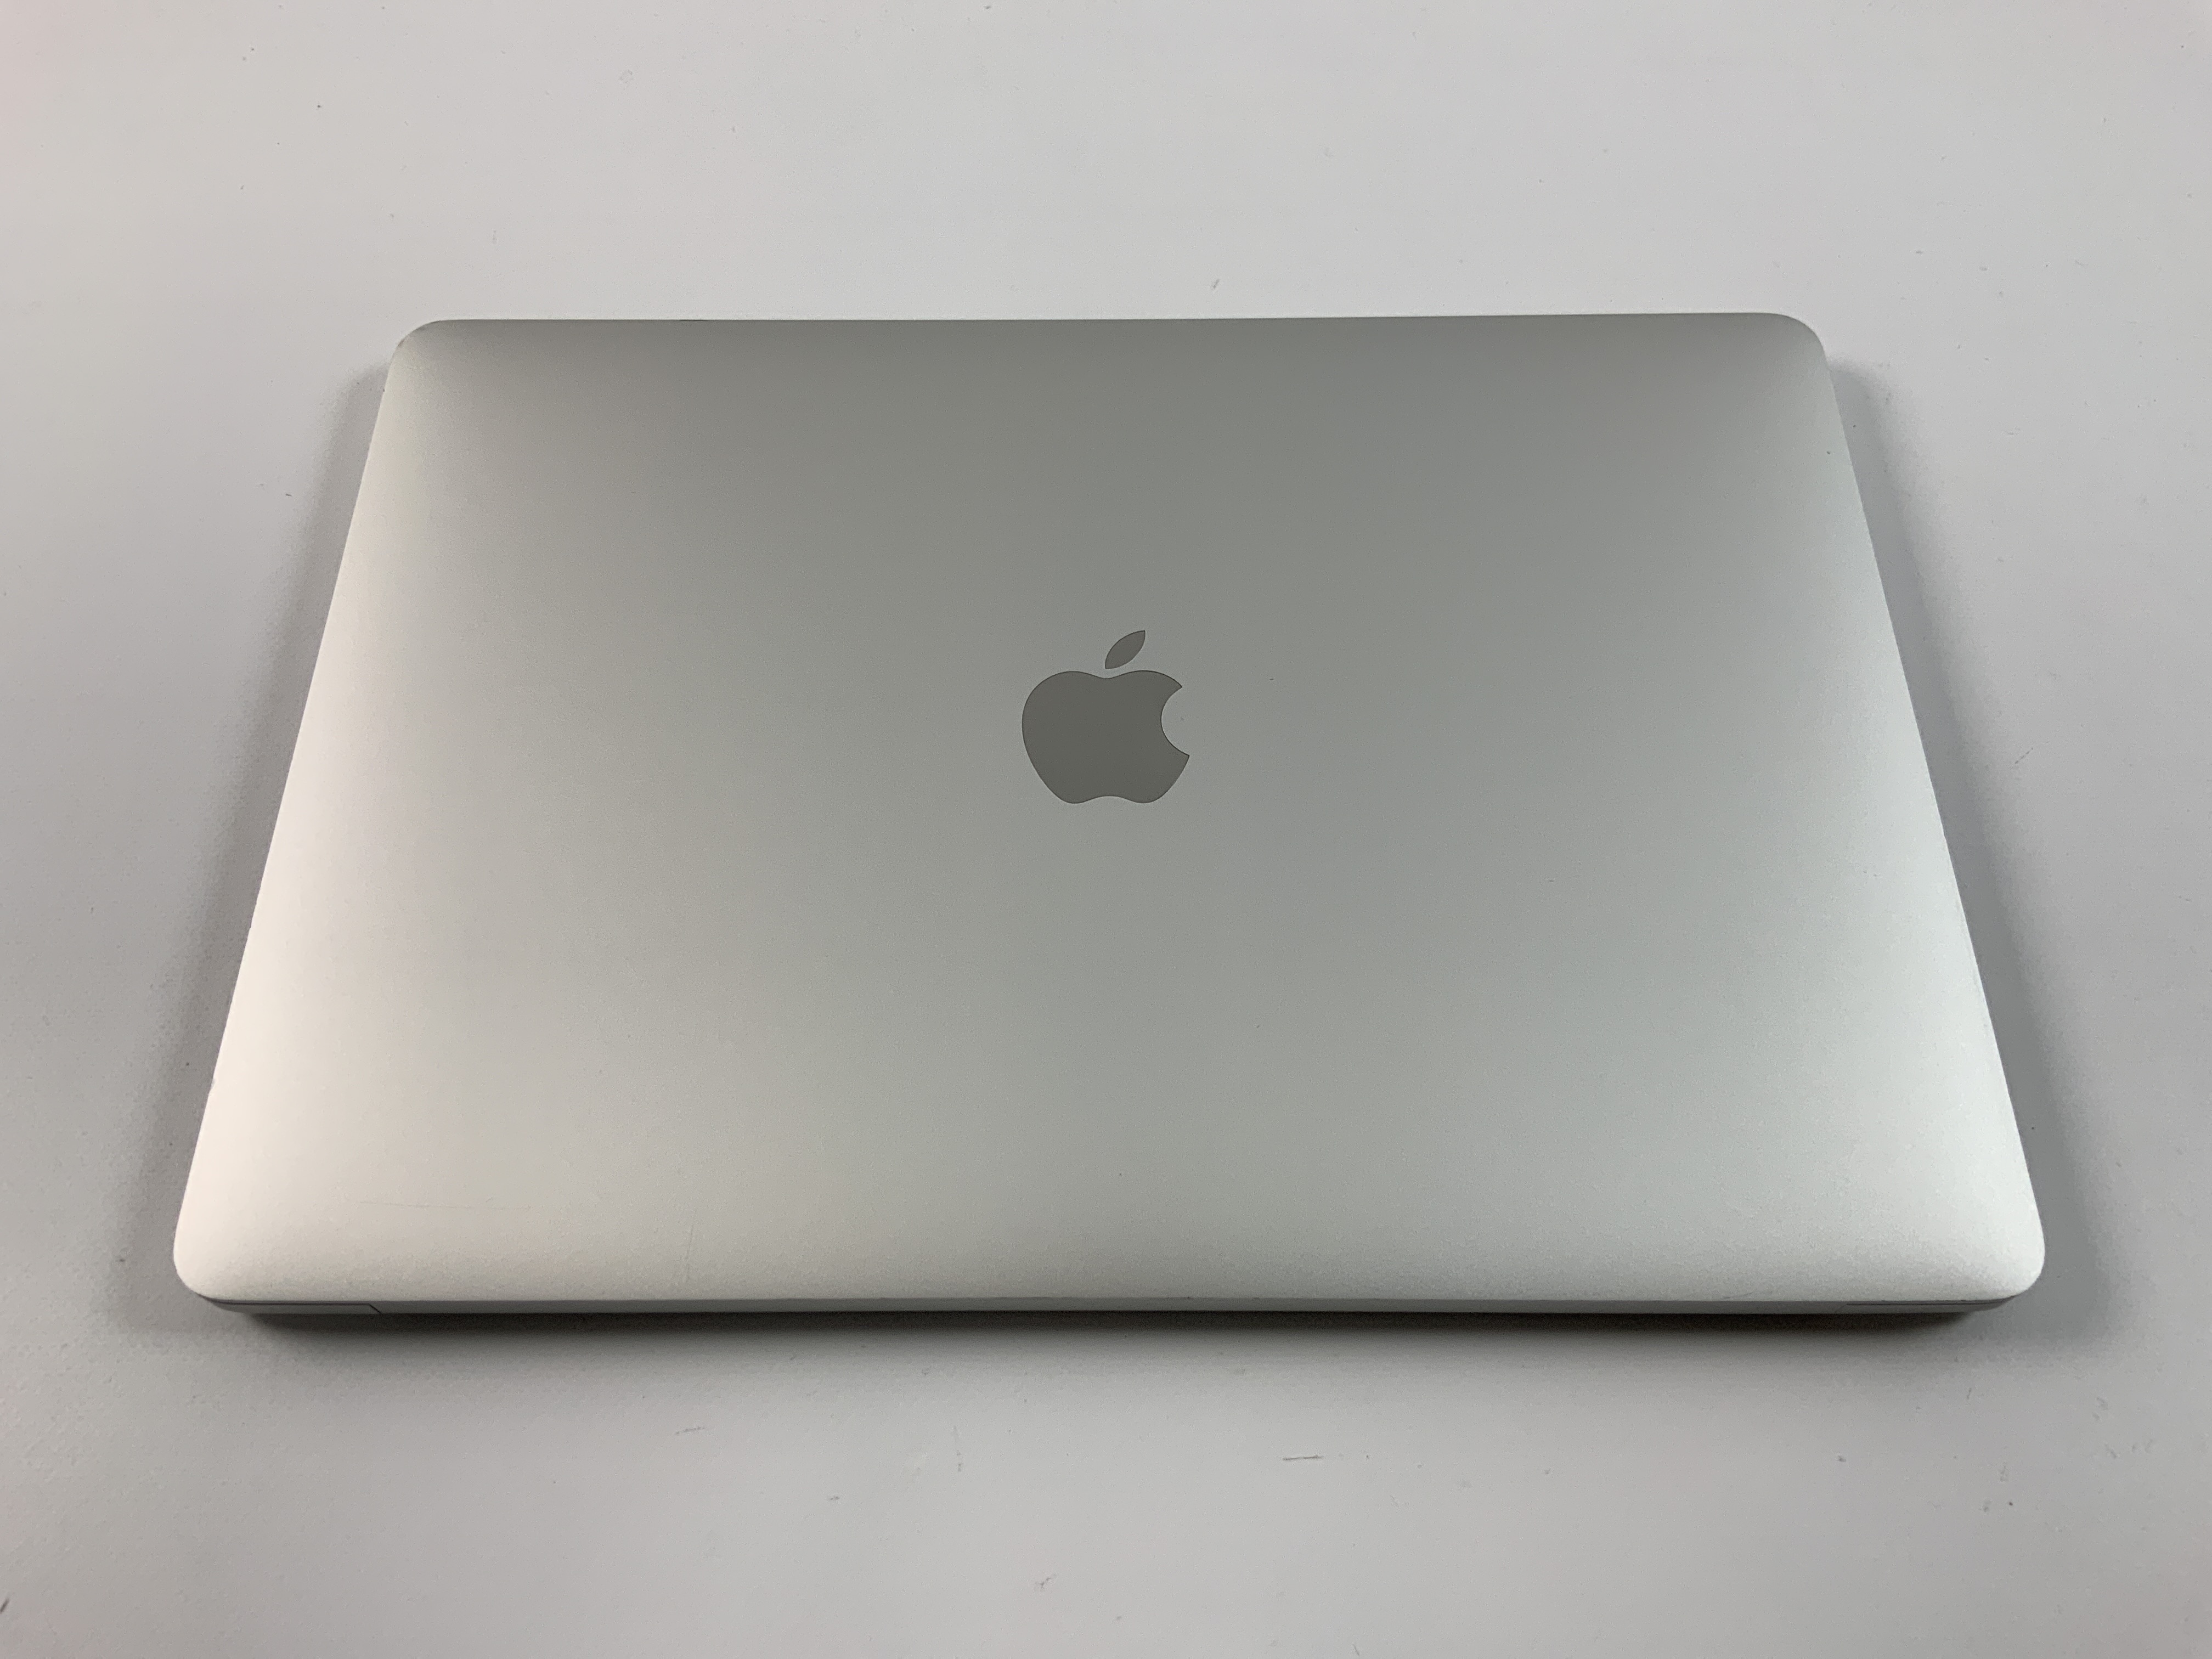 MacBook Pro 13" 4TBT Mid 2020 (Intel Quad-Core i5 2.0 GHz 16 GB RAM 512 GB SSD), Silver, Intel Quad-Core i5 2.0 GHz, 16 GB RAM, 512 GB SSD, bild 2